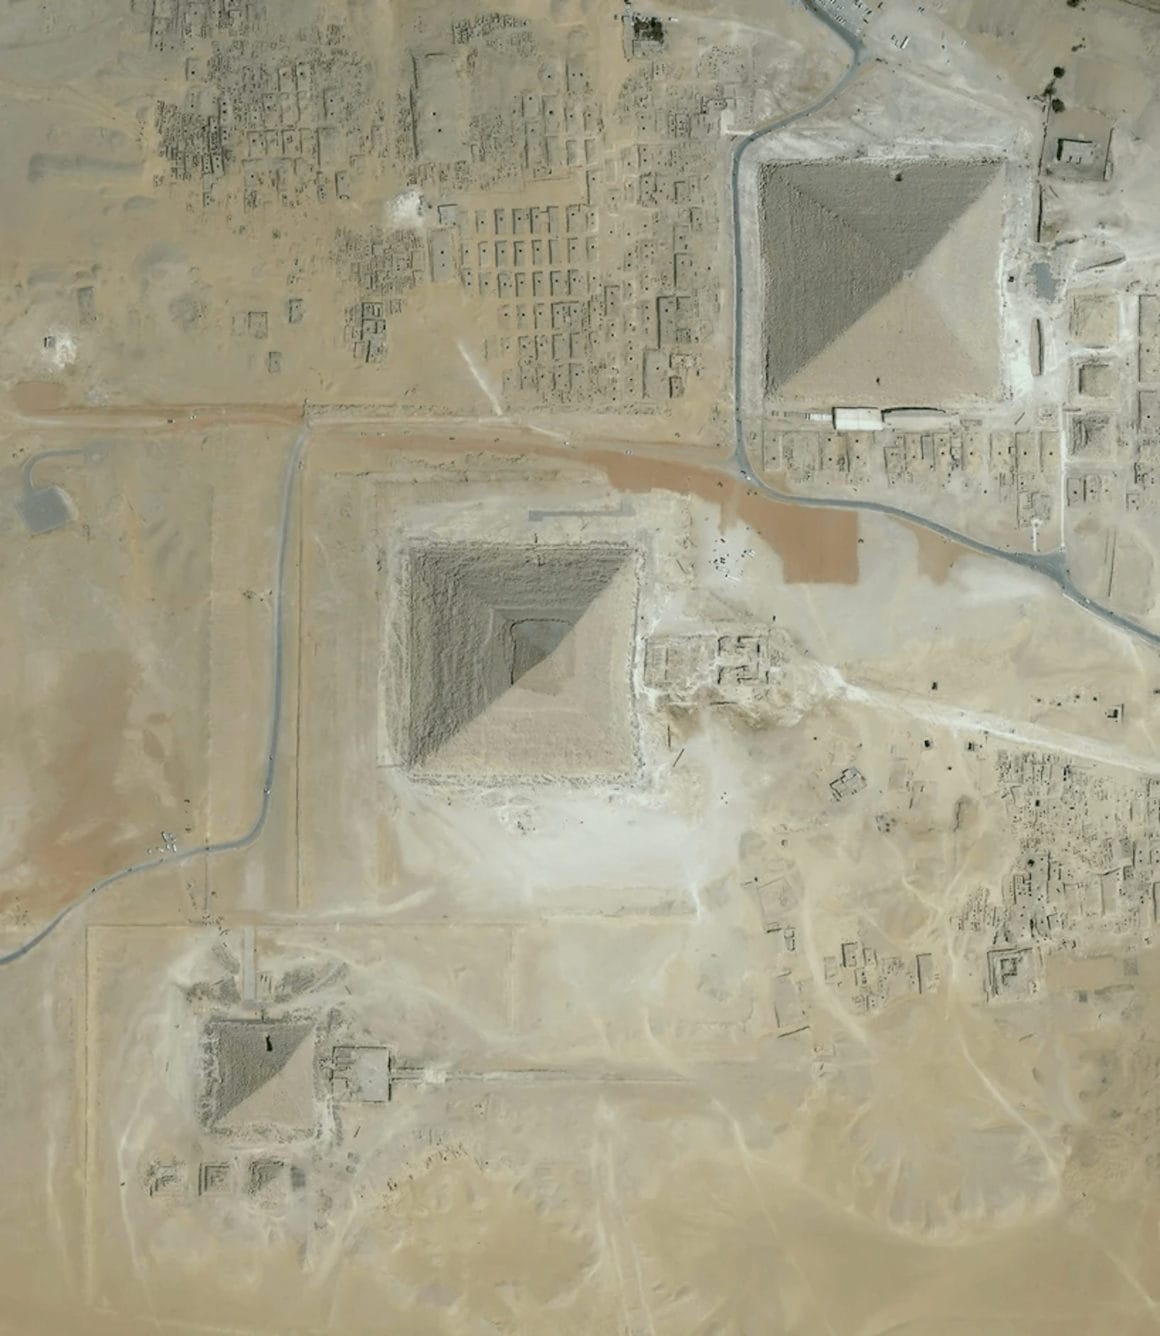 La fameuse Pyramide de Khéops vue cette fois ci depuis le ciel grâce à Digital globe